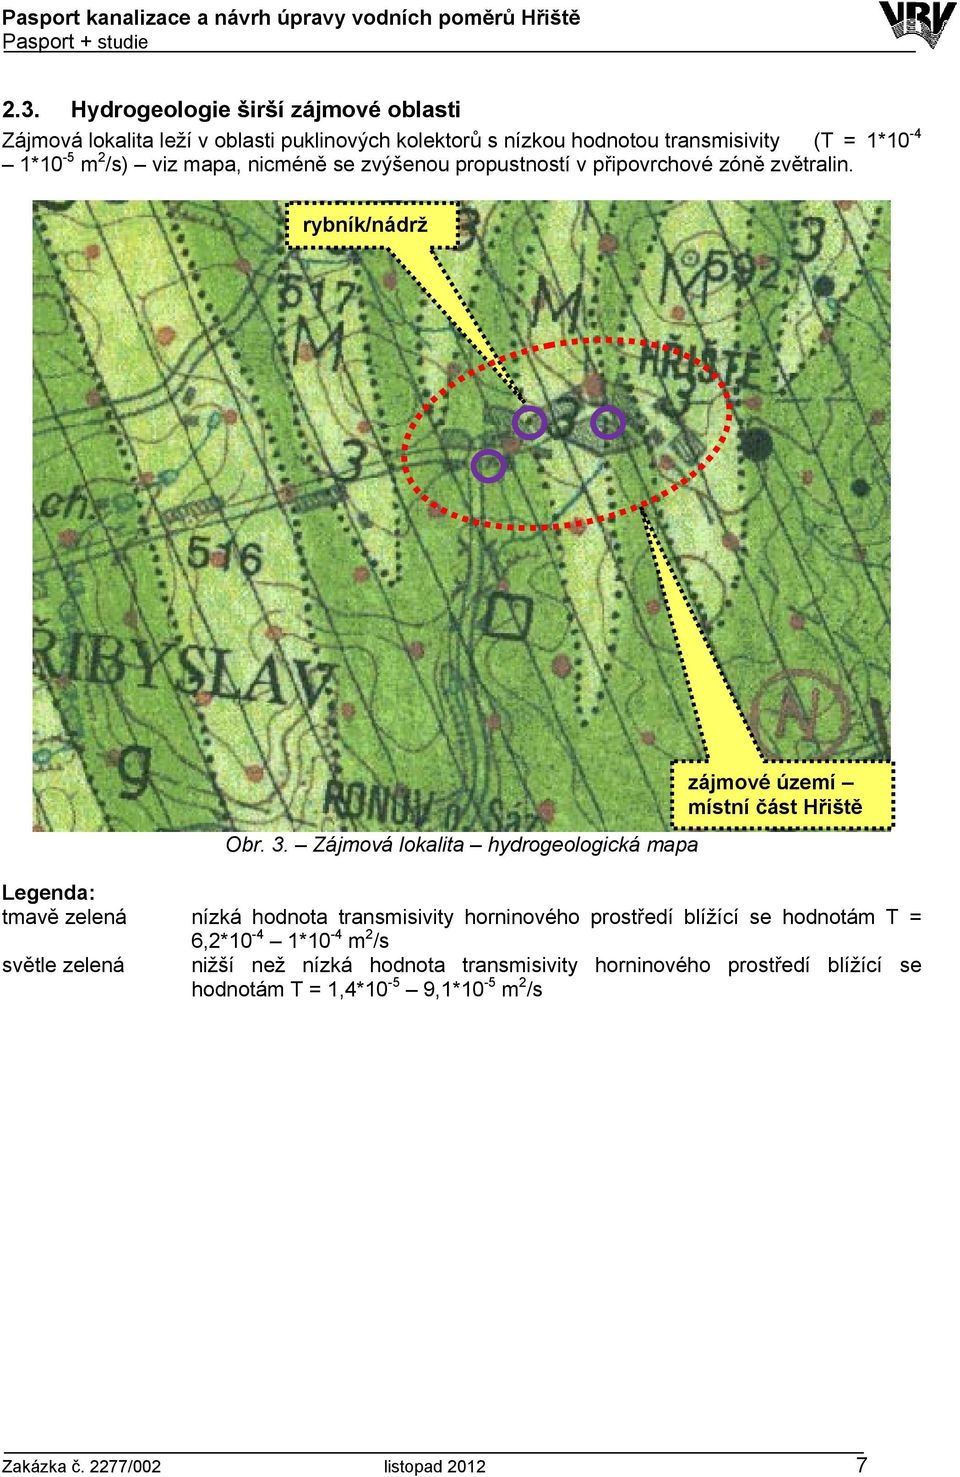 Zájmová lokalita hydrogeologická mapa zájmové území místní část Hřiště Legenda: tmavě zelená nízká hodnota transmisivity horninového prostředí